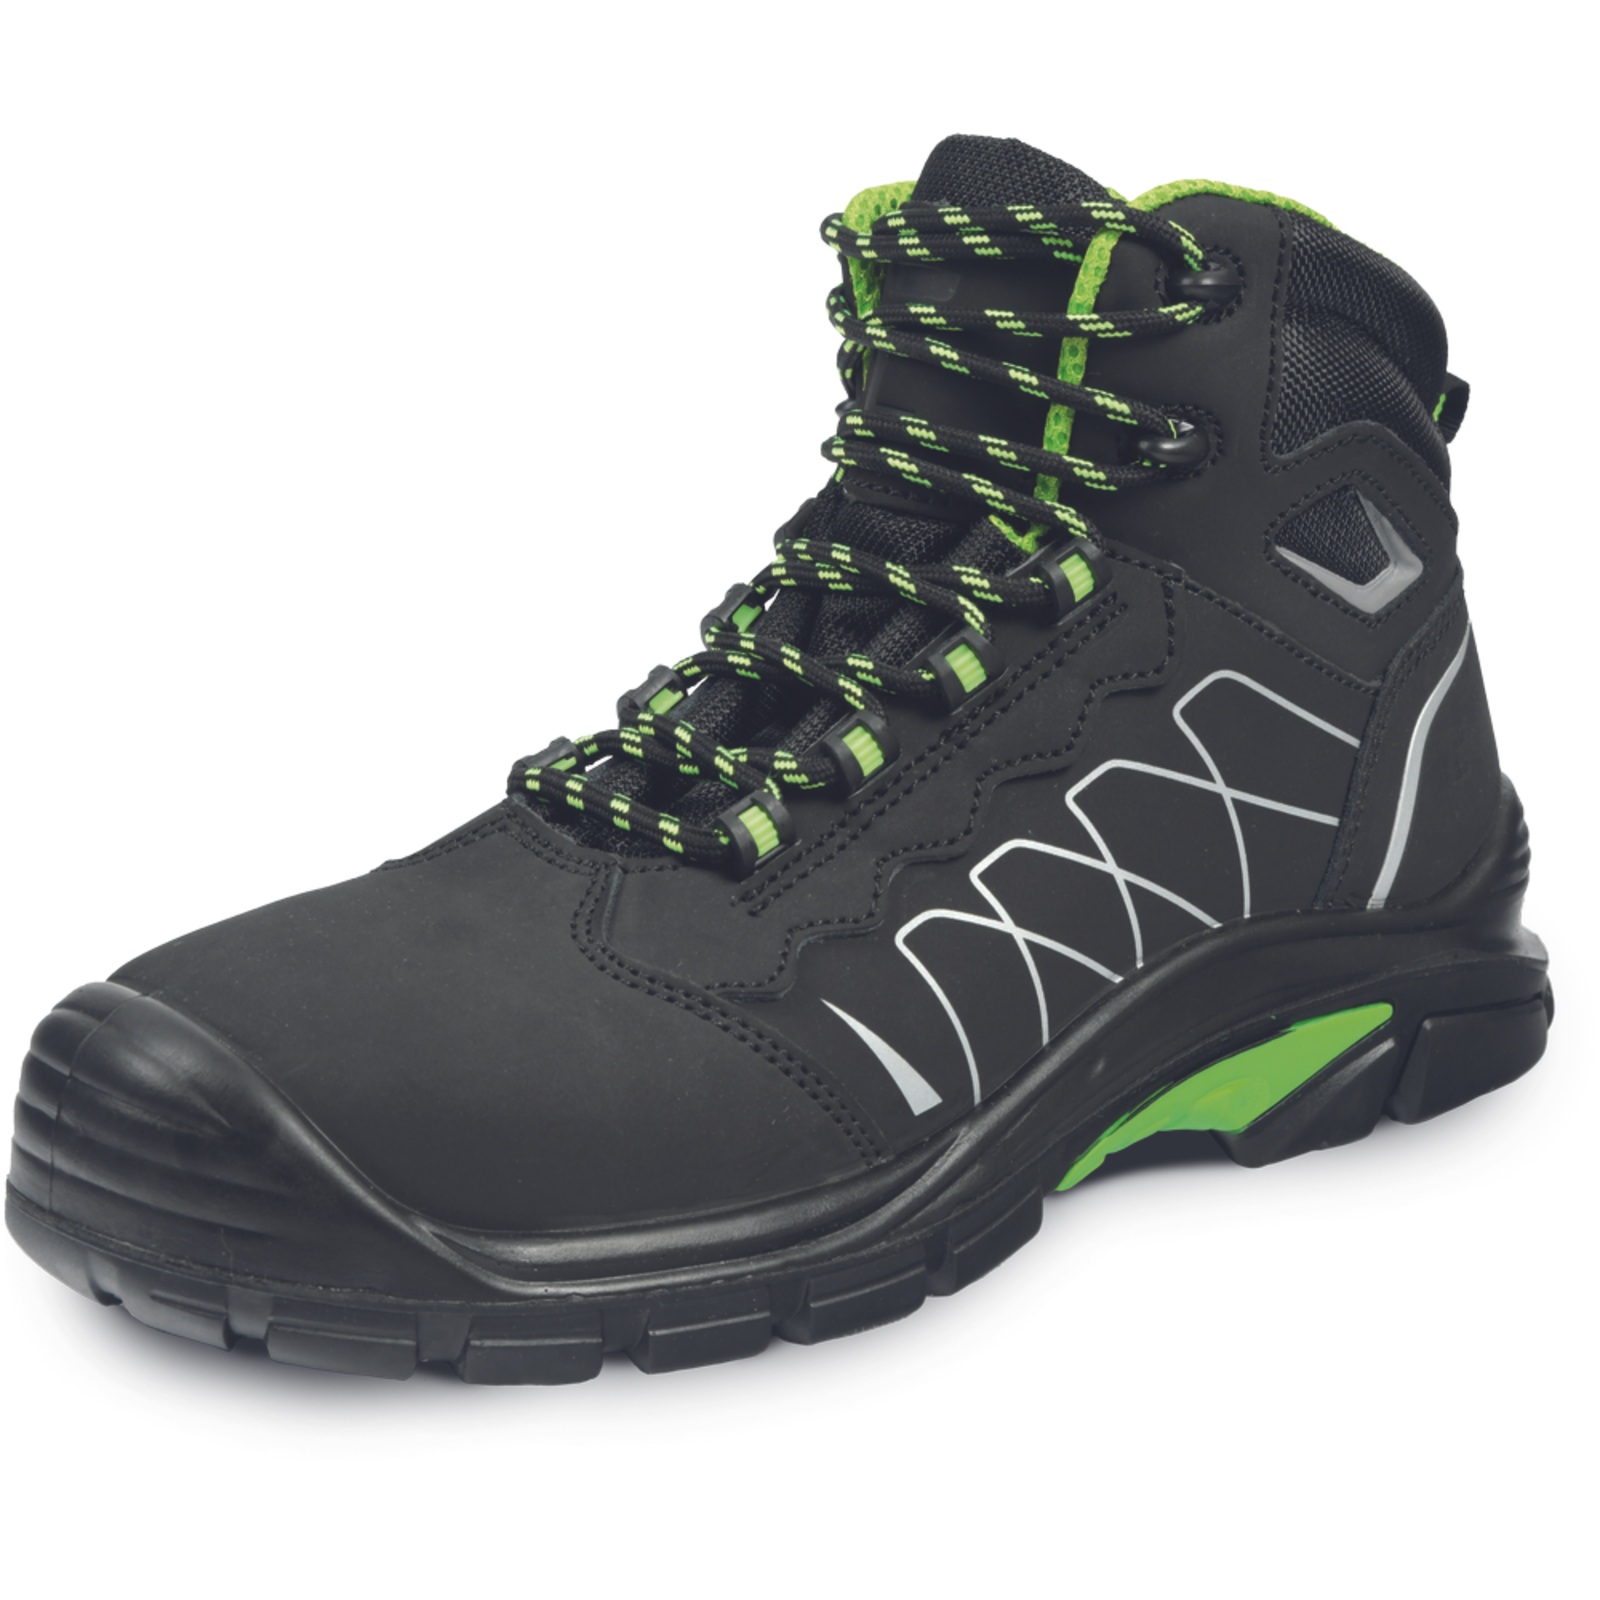 Bezpečnostná členková obuv Cerva Tornafort MF S3 SRC - veľkosť: 43, farba: čierna/zelená